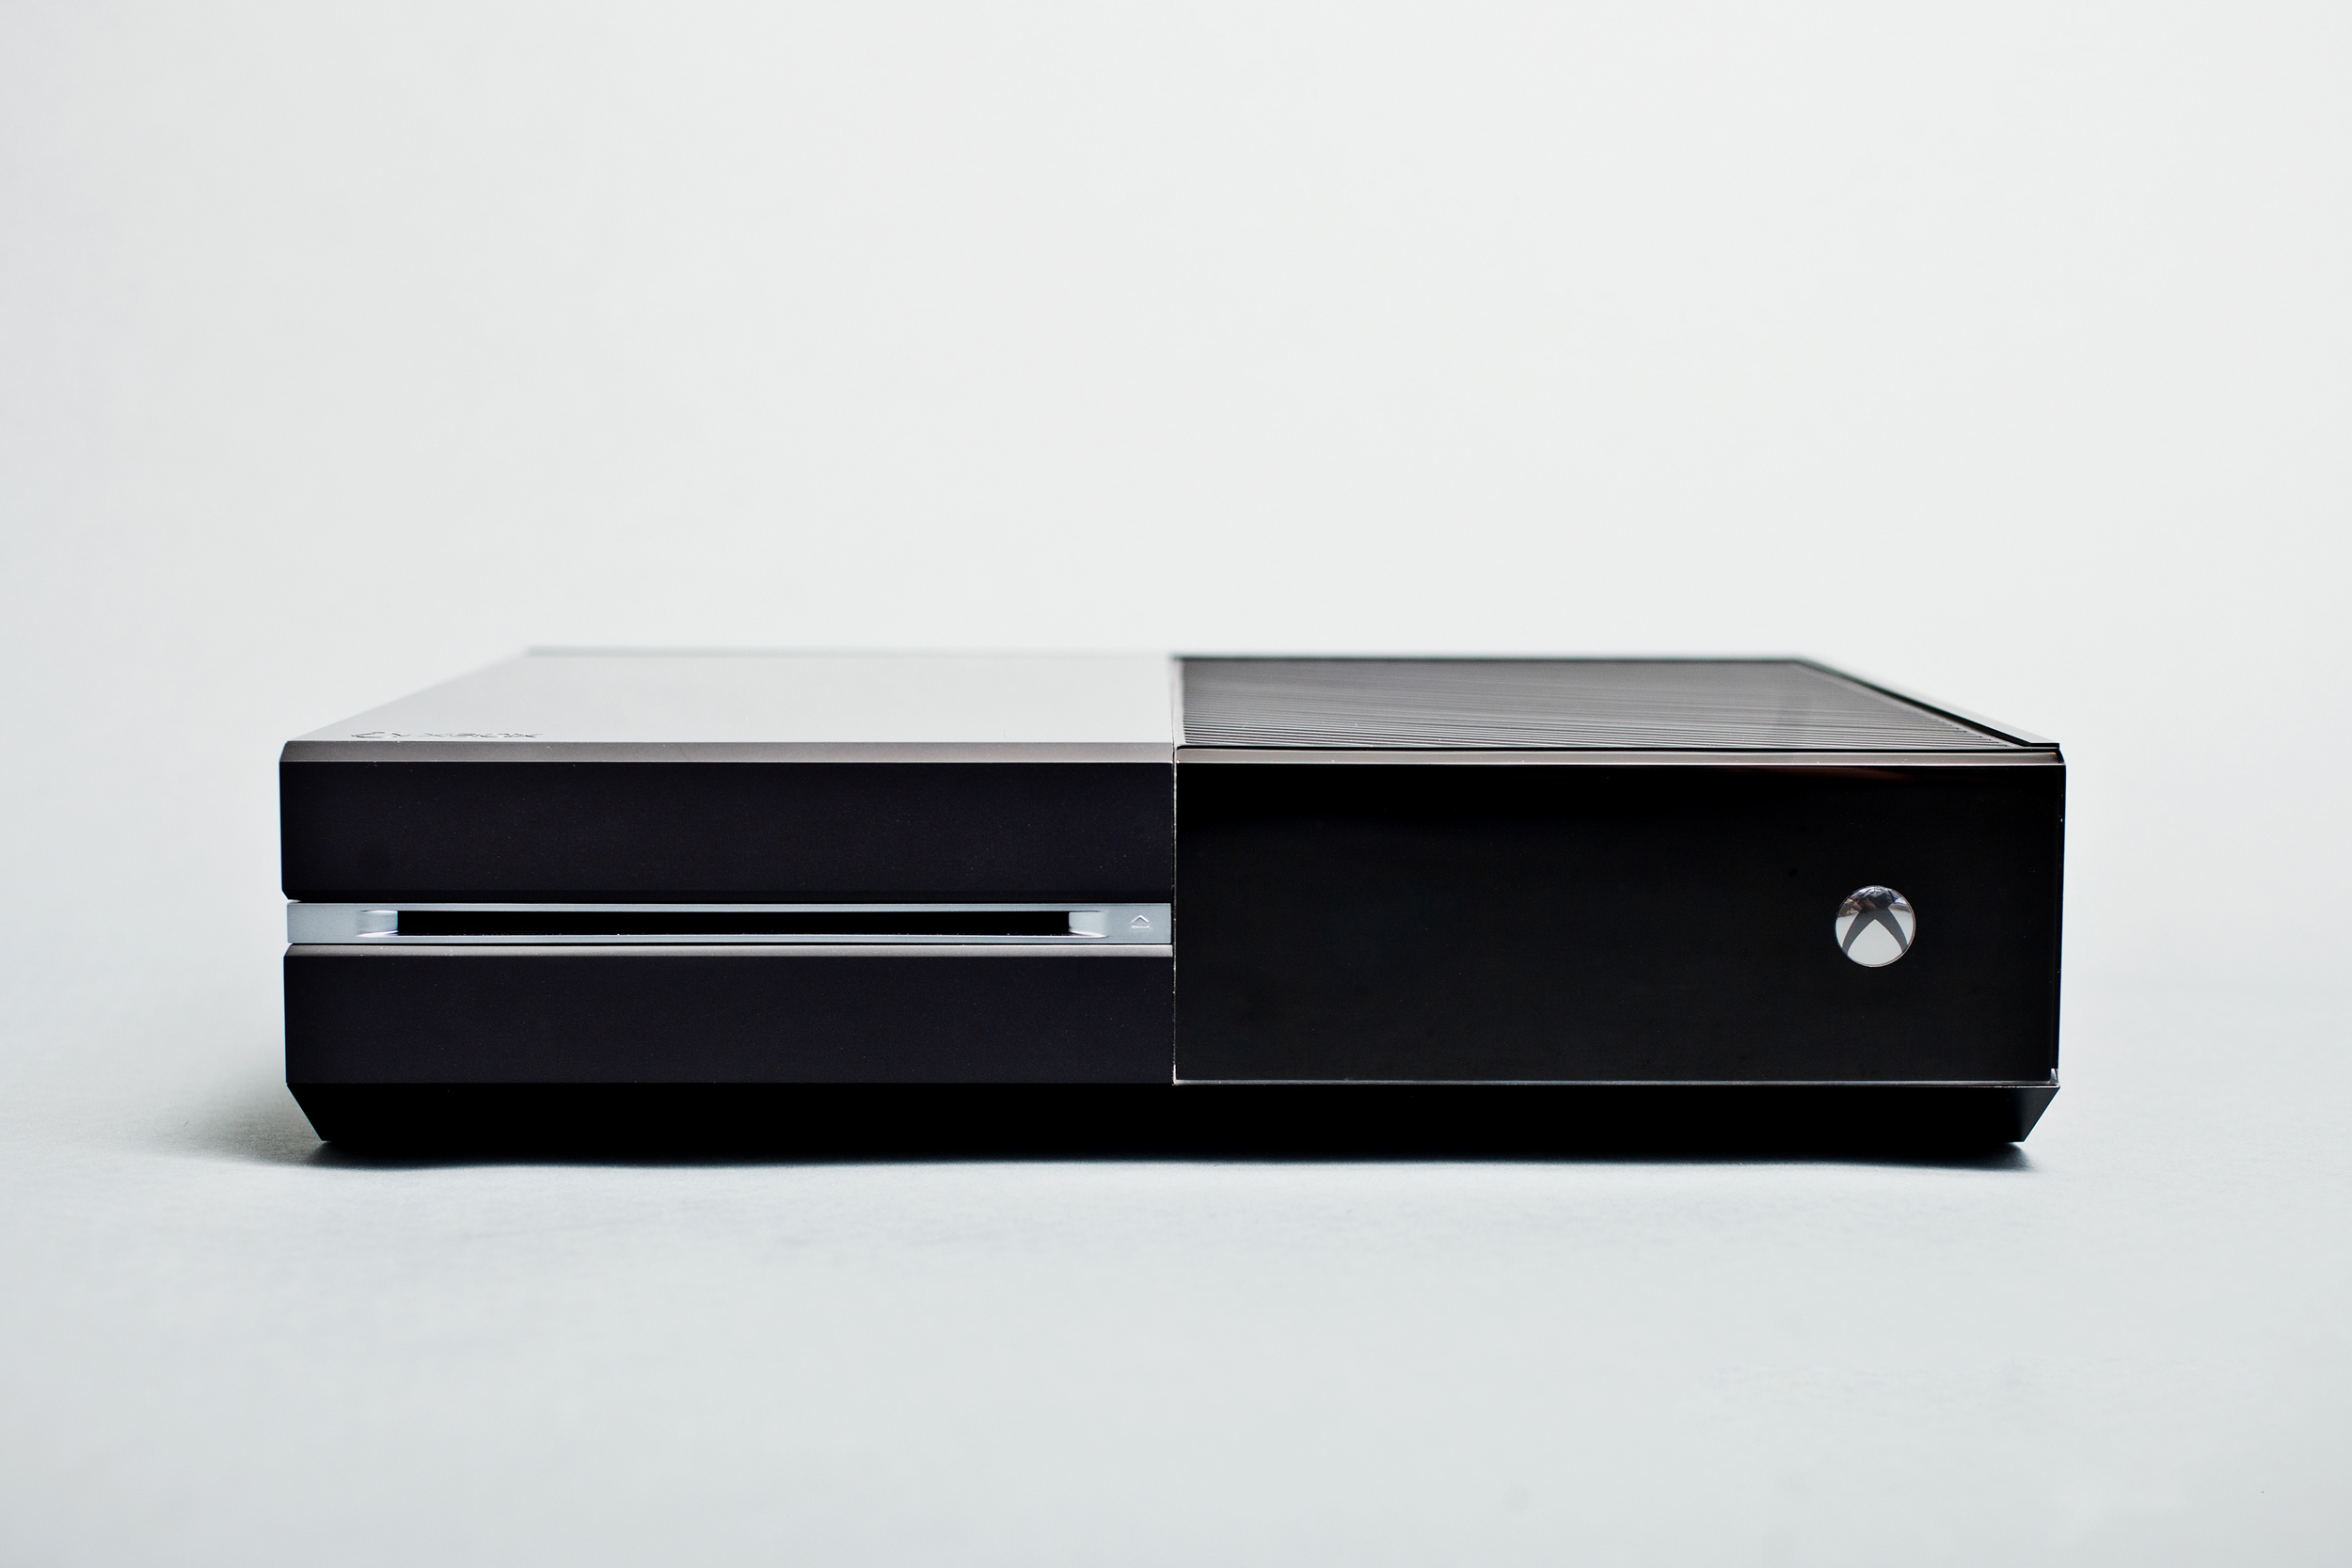 Detalles Juegos Y Fecha De Lanzamiento The Xbox One Console Front